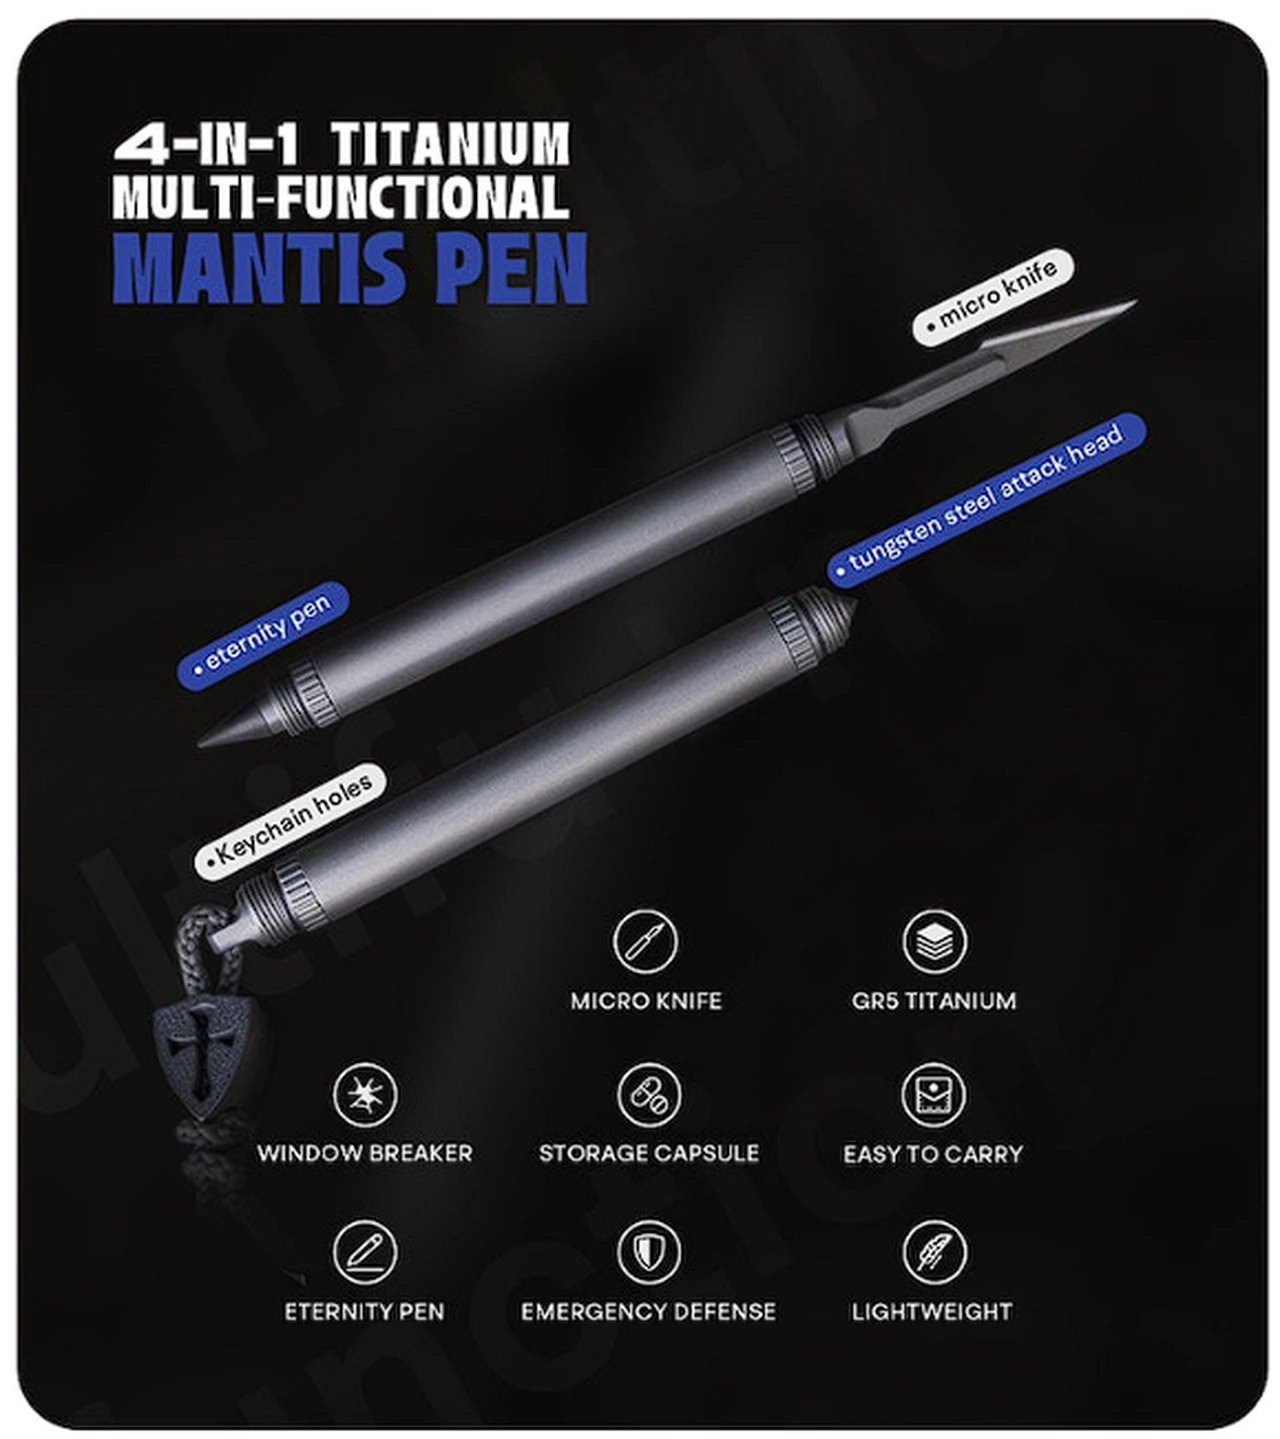 Mantis Pen multitool features